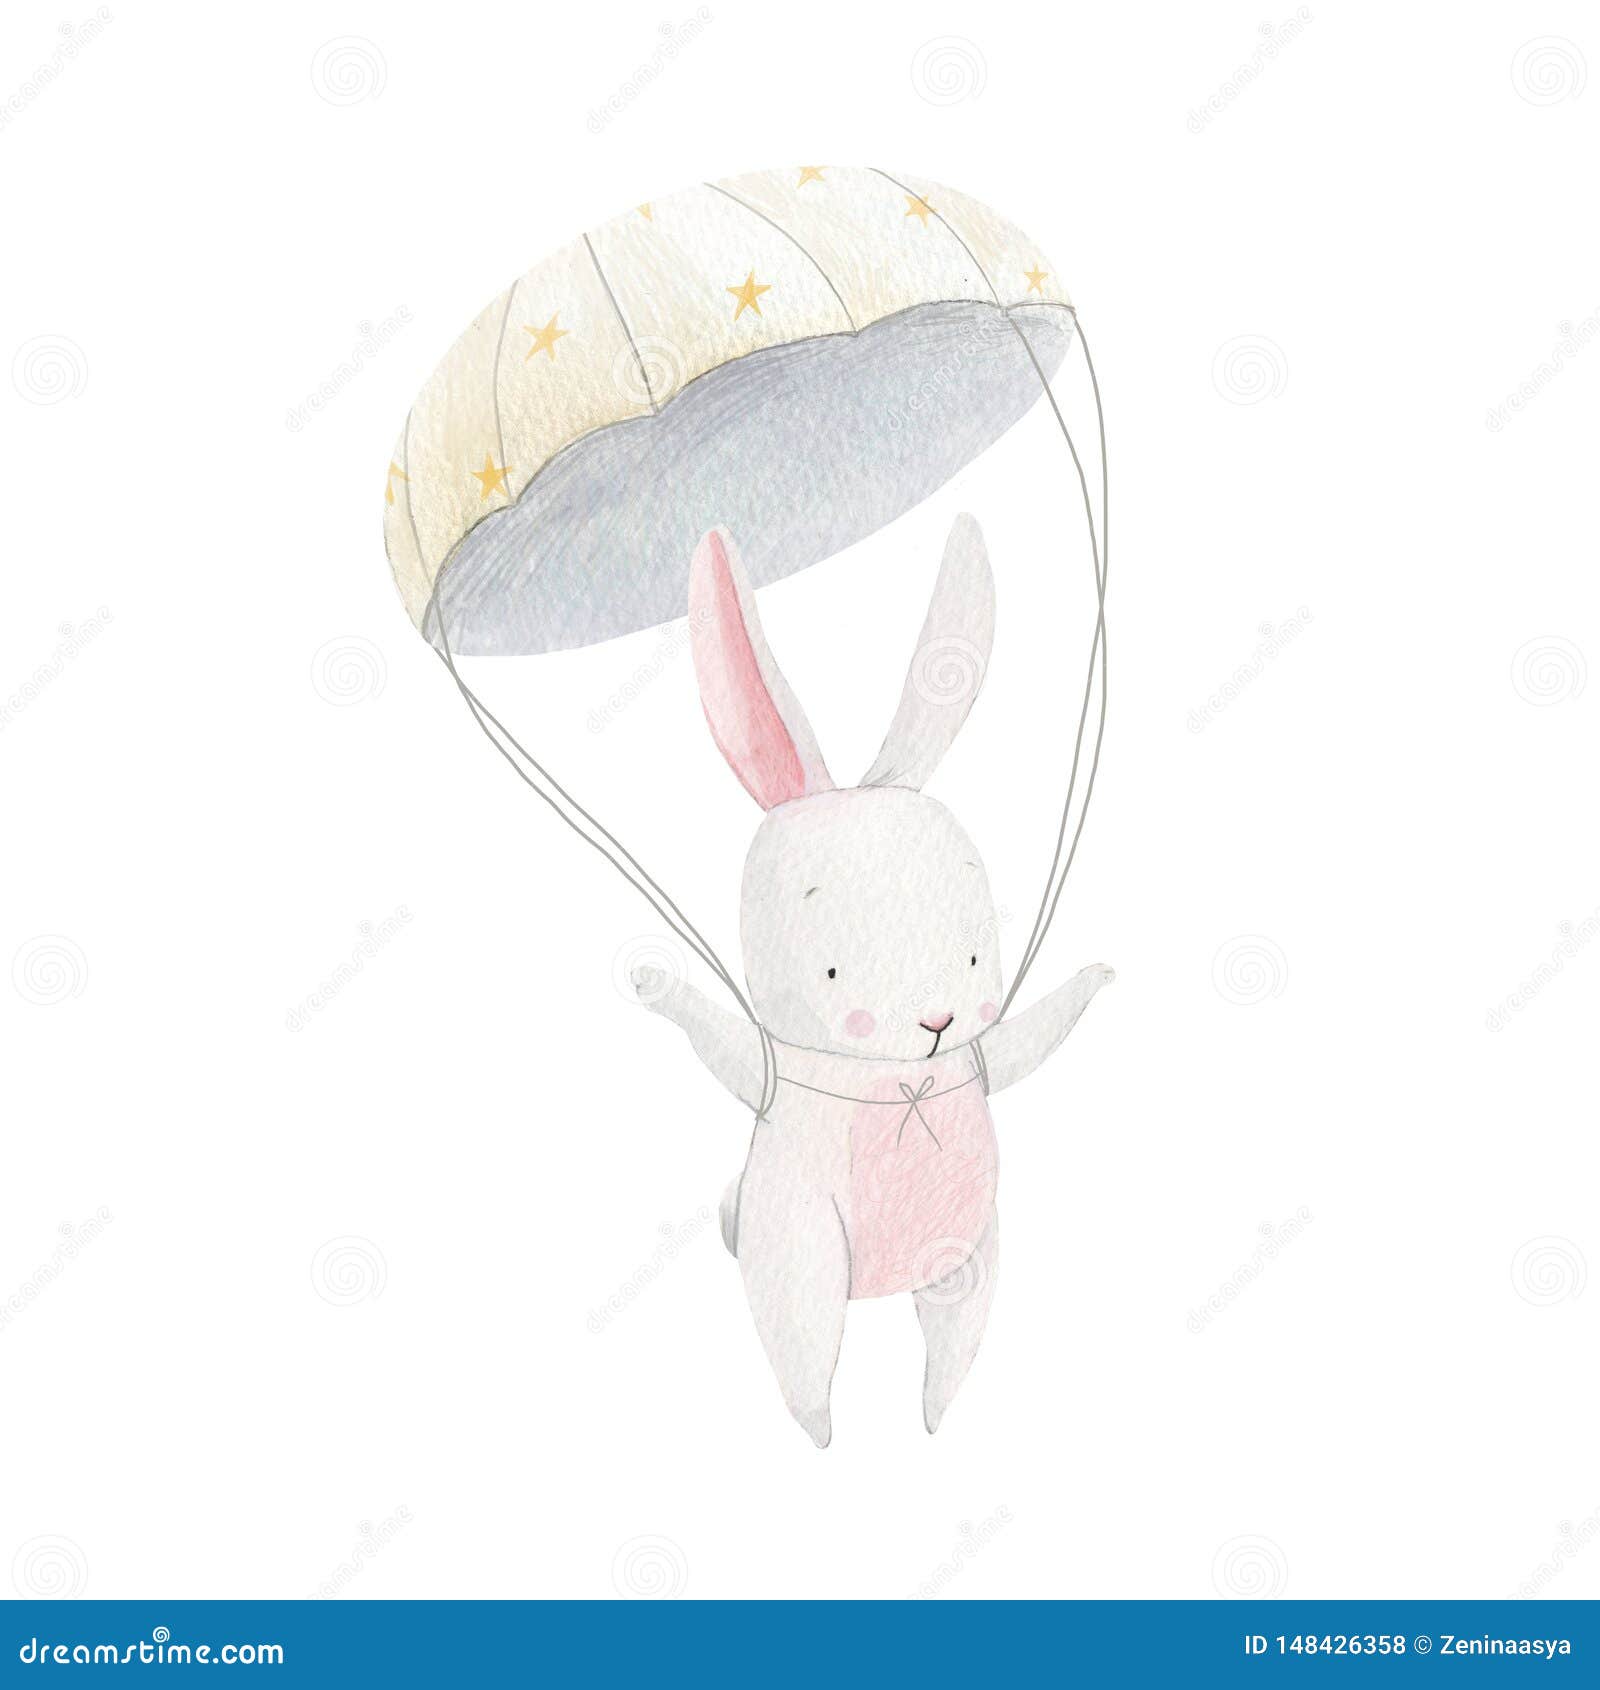 watercolor baby rabbit skydiver